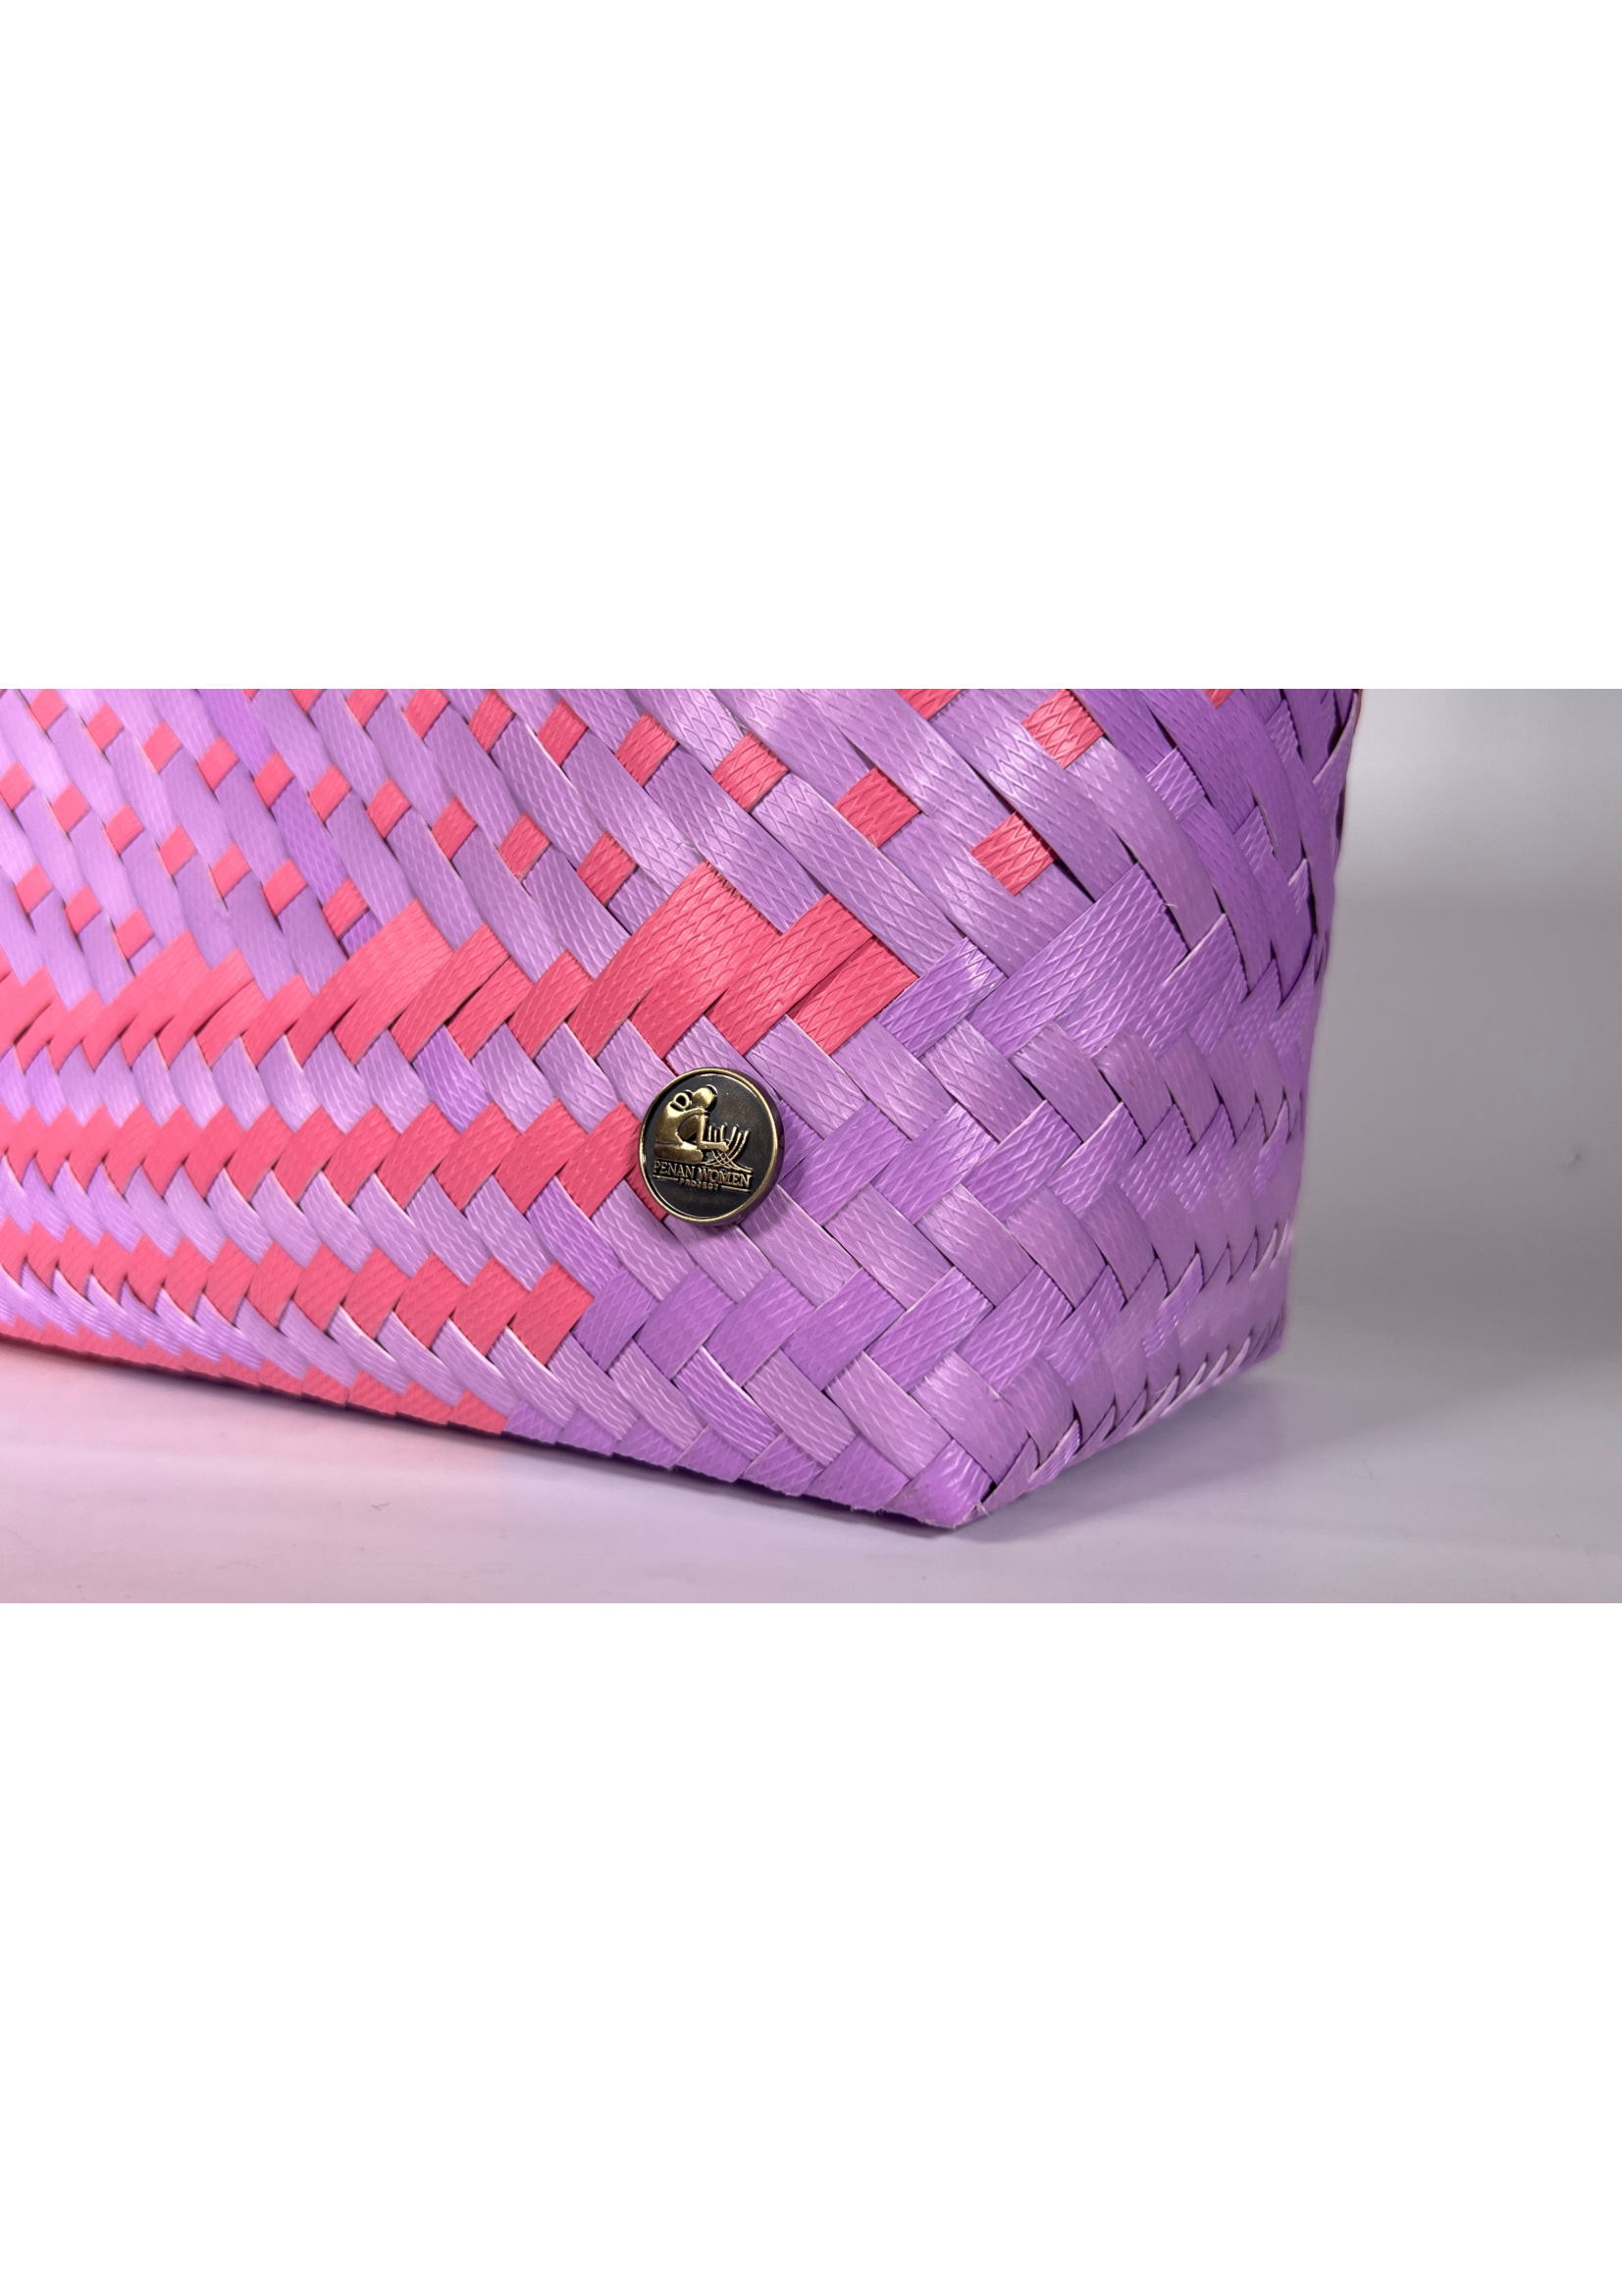 Pink & Lilac Patterned Bag